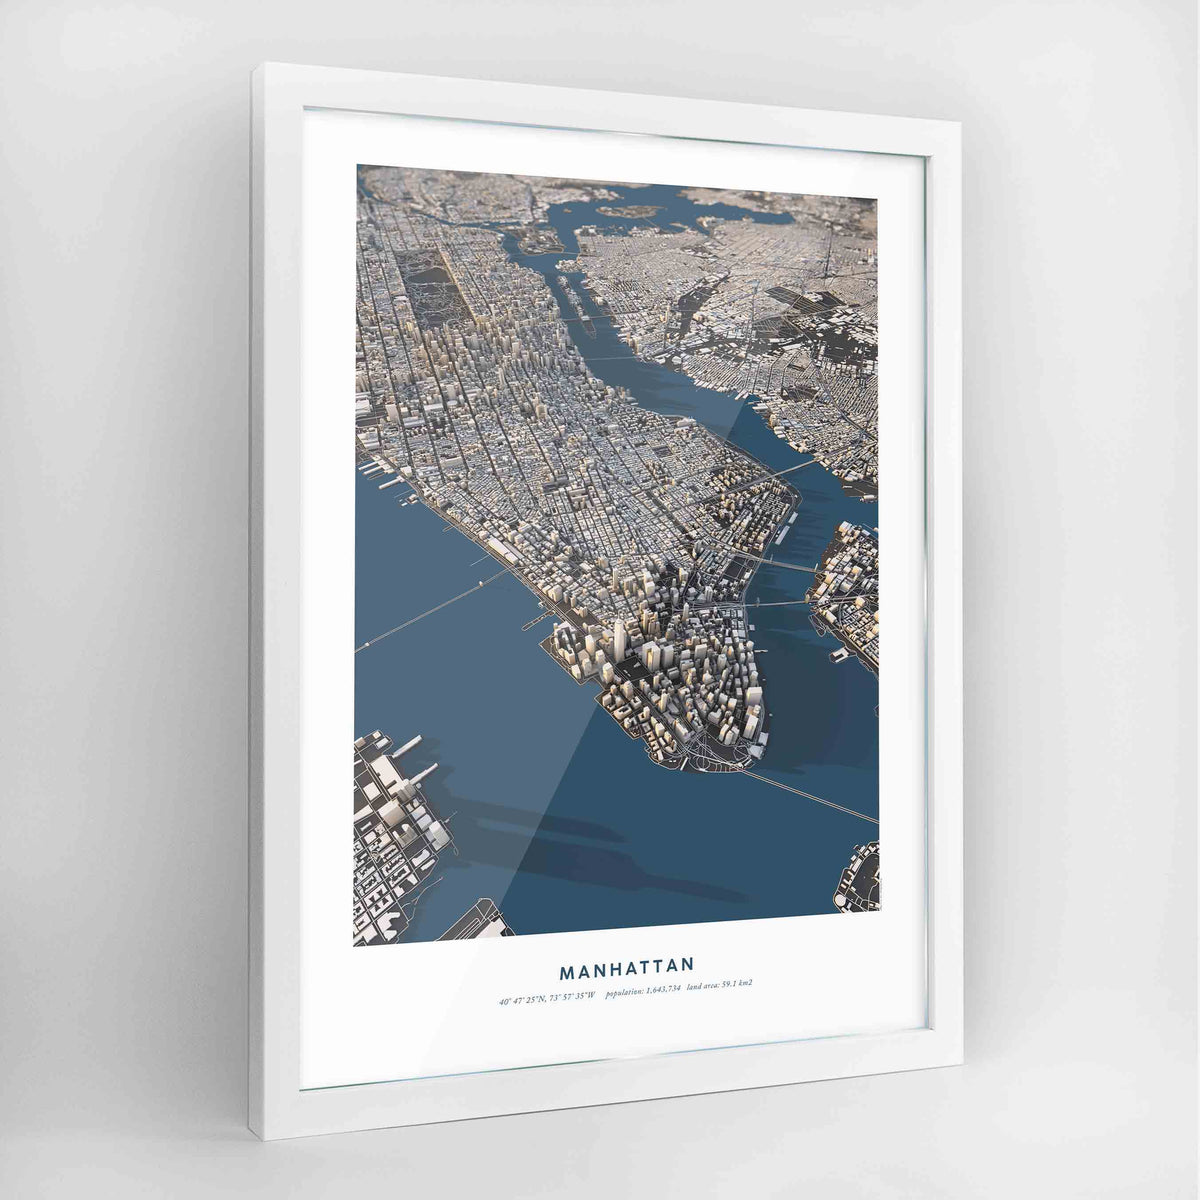 Manhattan 3D City Model - Framed